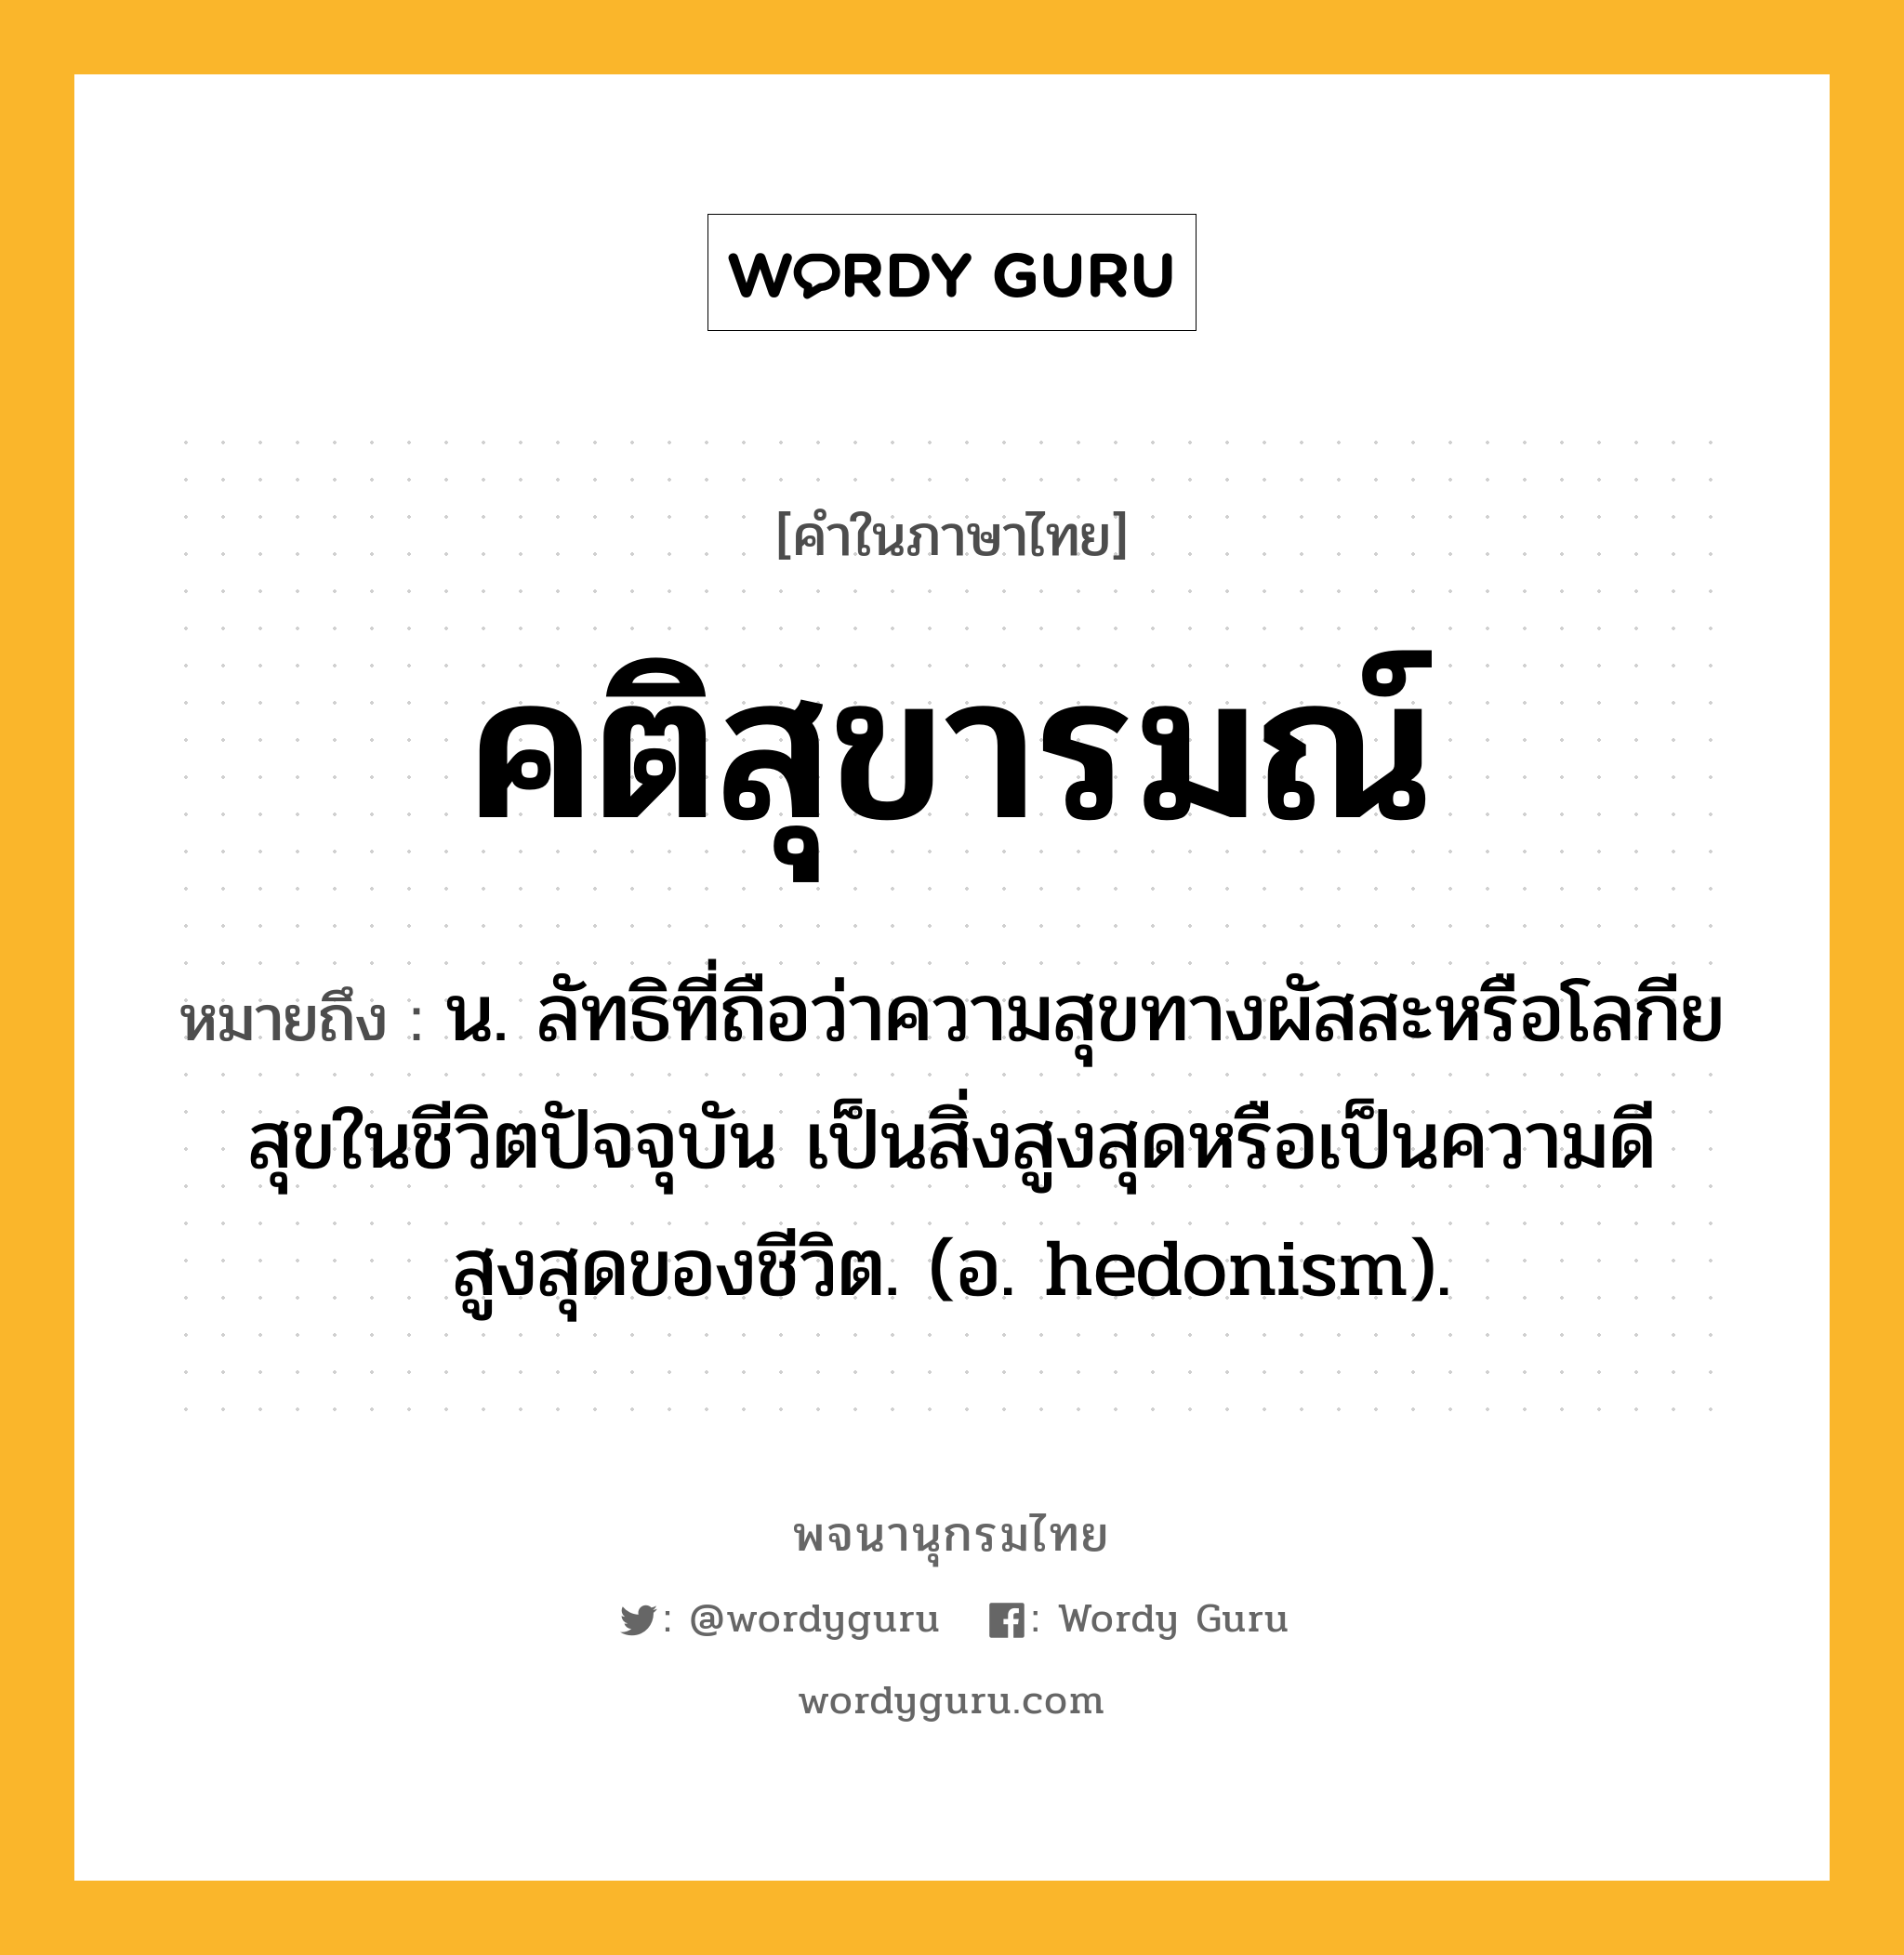 คติสุขารมณ์ ความหมาย หมายถึงอะไร?, คำในภาษาไทย คติสุขารมณ์ หมายถึง น. ลัทธิที่ถือว่าความสุขทางผัสสะหรือโลกียสุขในชีวิตปัจจุบัน เป็นสิ่งสูงสุดหรือเป็นความดีสูงสุดของชีวิต. (อ. hedonism).